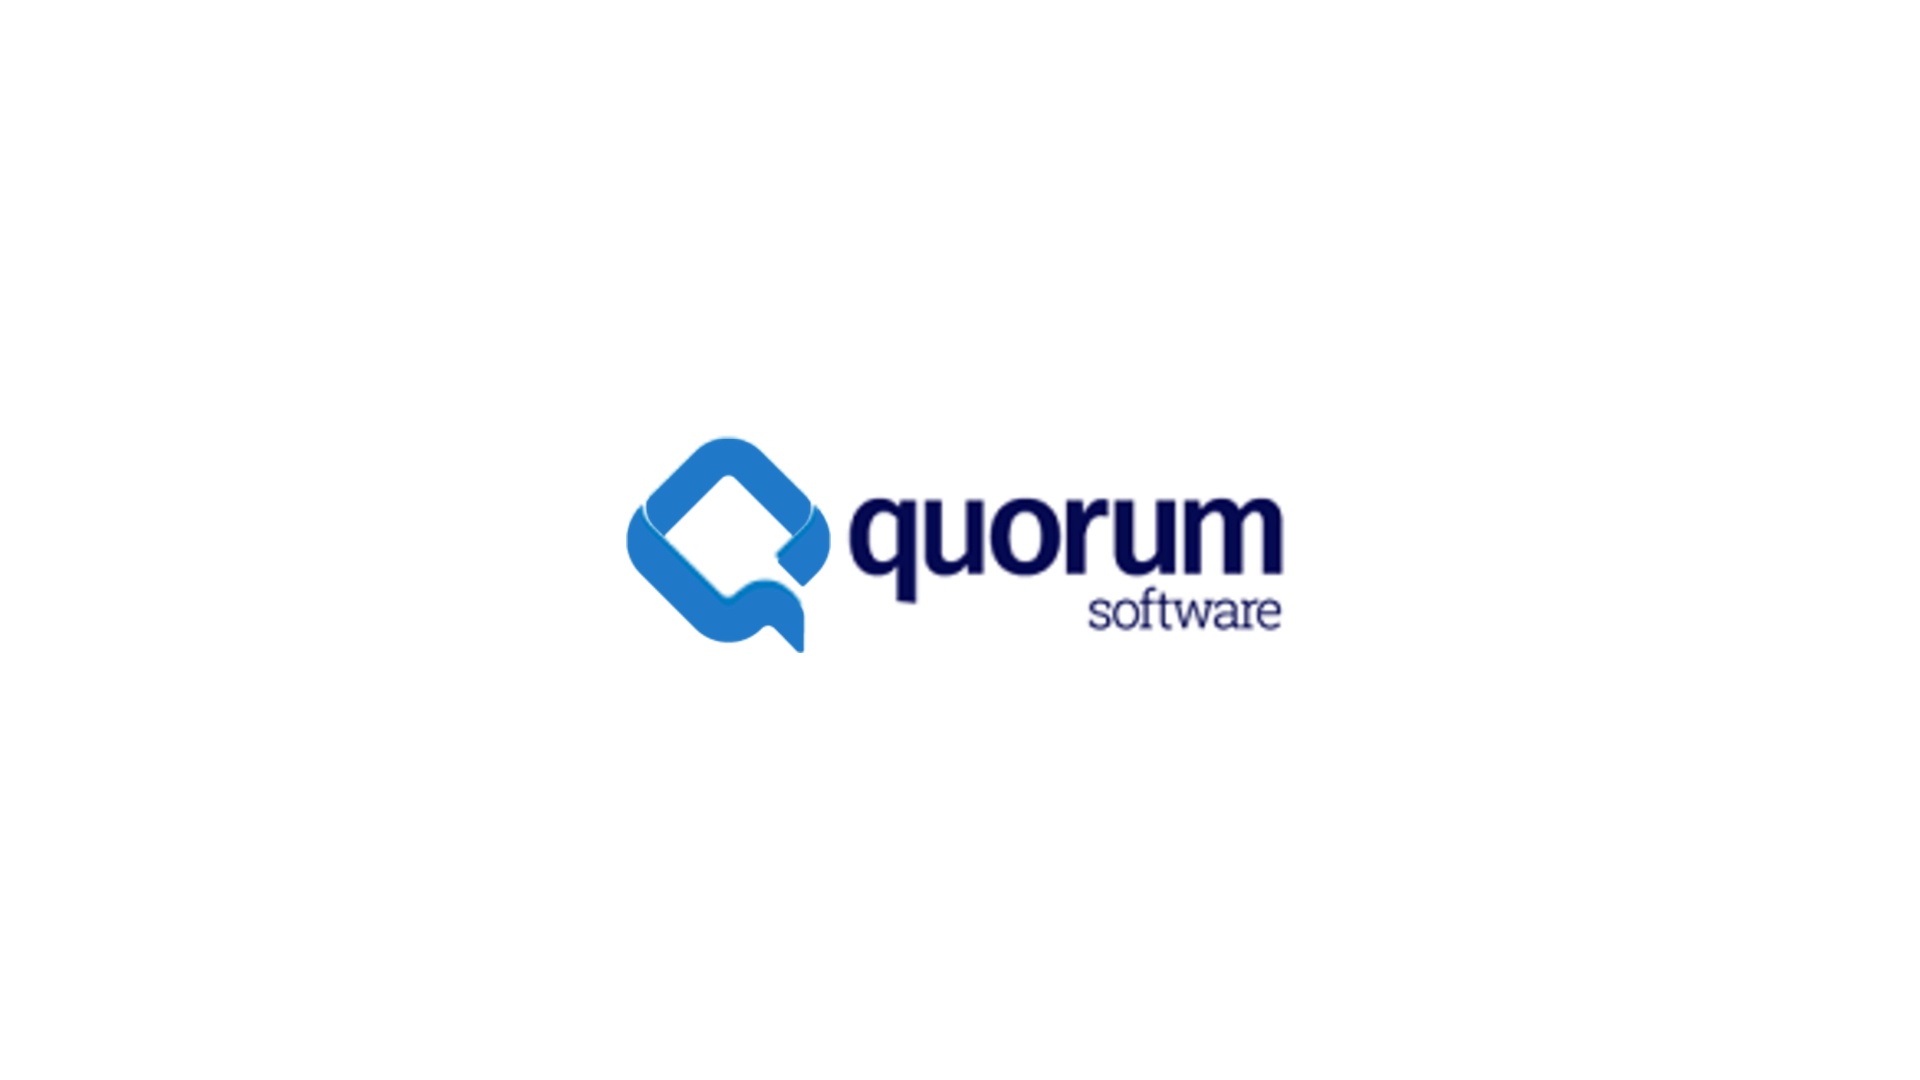 Quorum Software Announces myQuorum Platform Spring 2018 Update